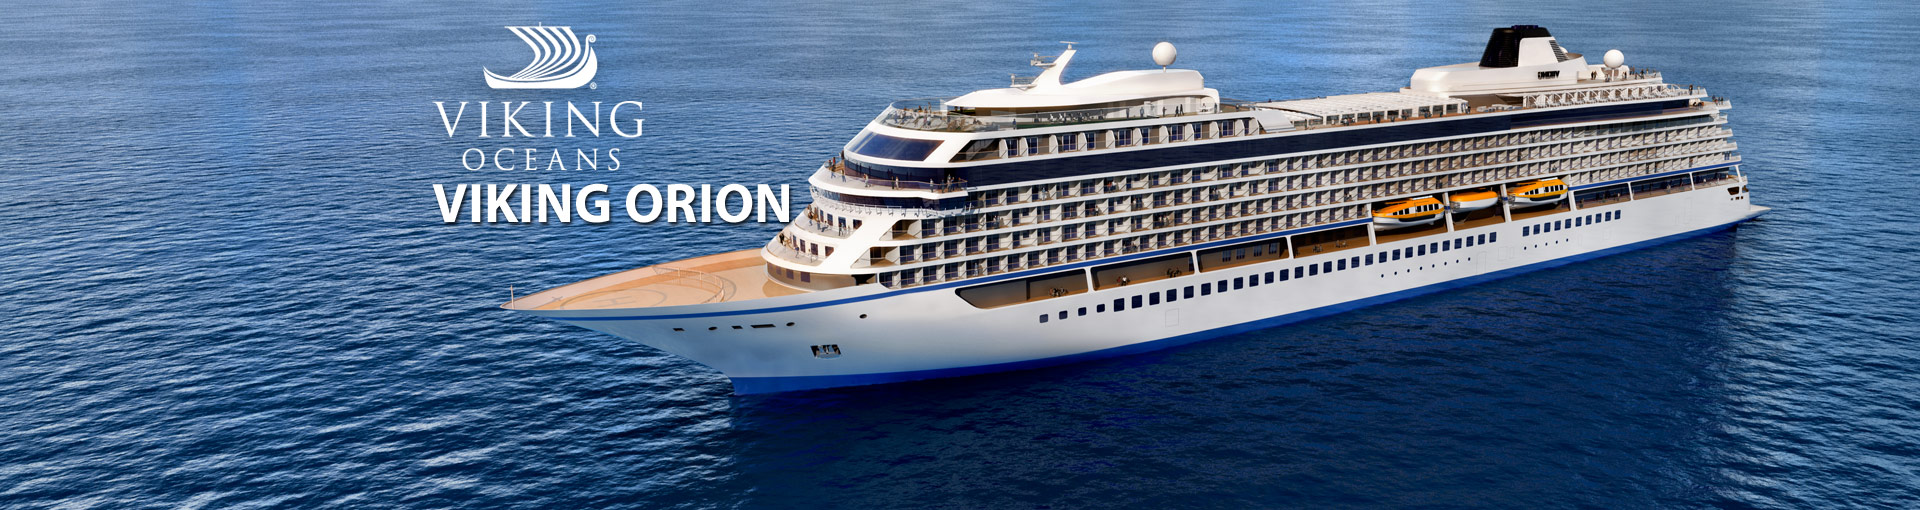 Viking Orion Cruise Ship, 2018-2019 Viking Orion cruise ...